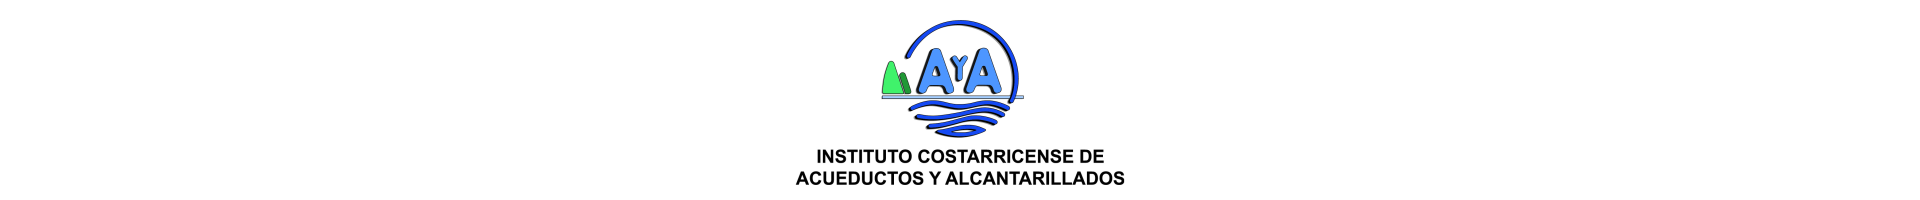 AyA - Instituto Costarricense de Acueductos y Alcantarillados